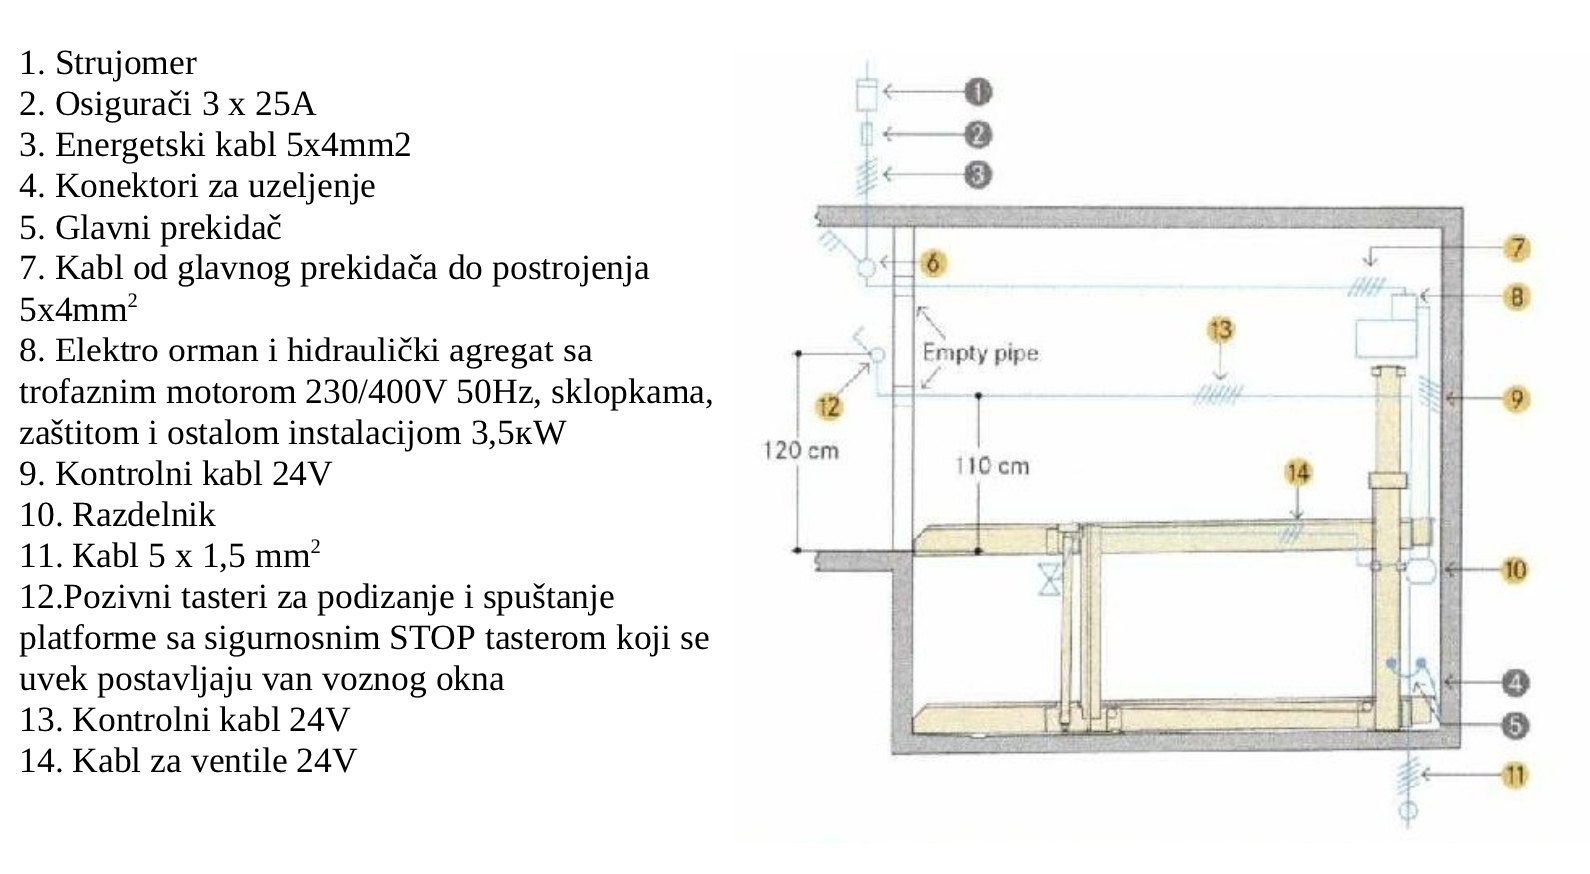 Funkcionisanje Instalacije - Horizontalni Double Pit Sistem